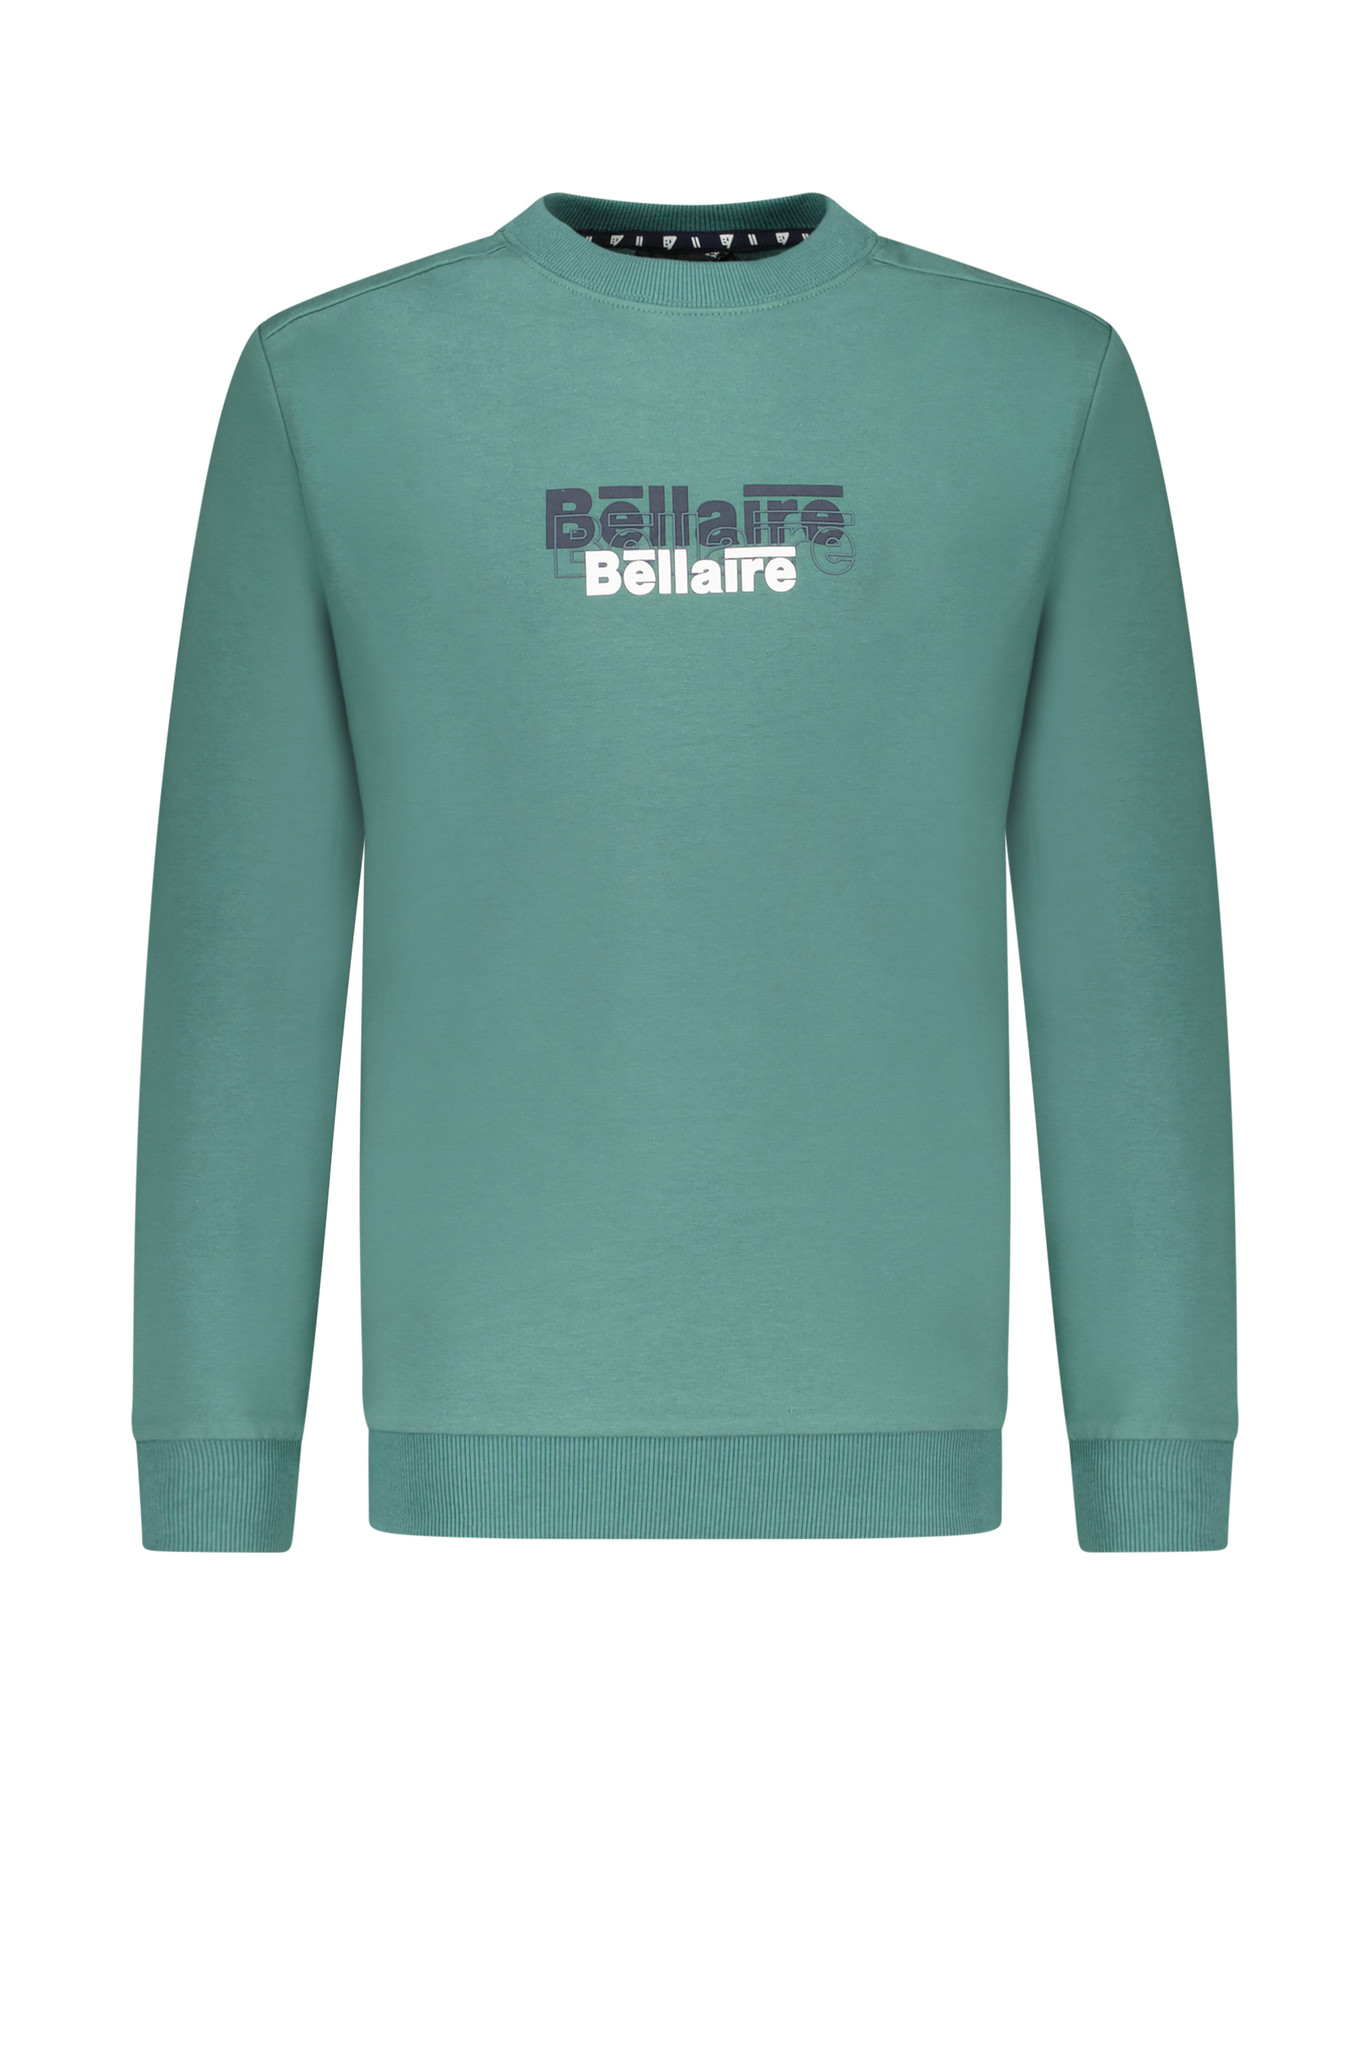 Bellaire Jongens sweater - Deep sea